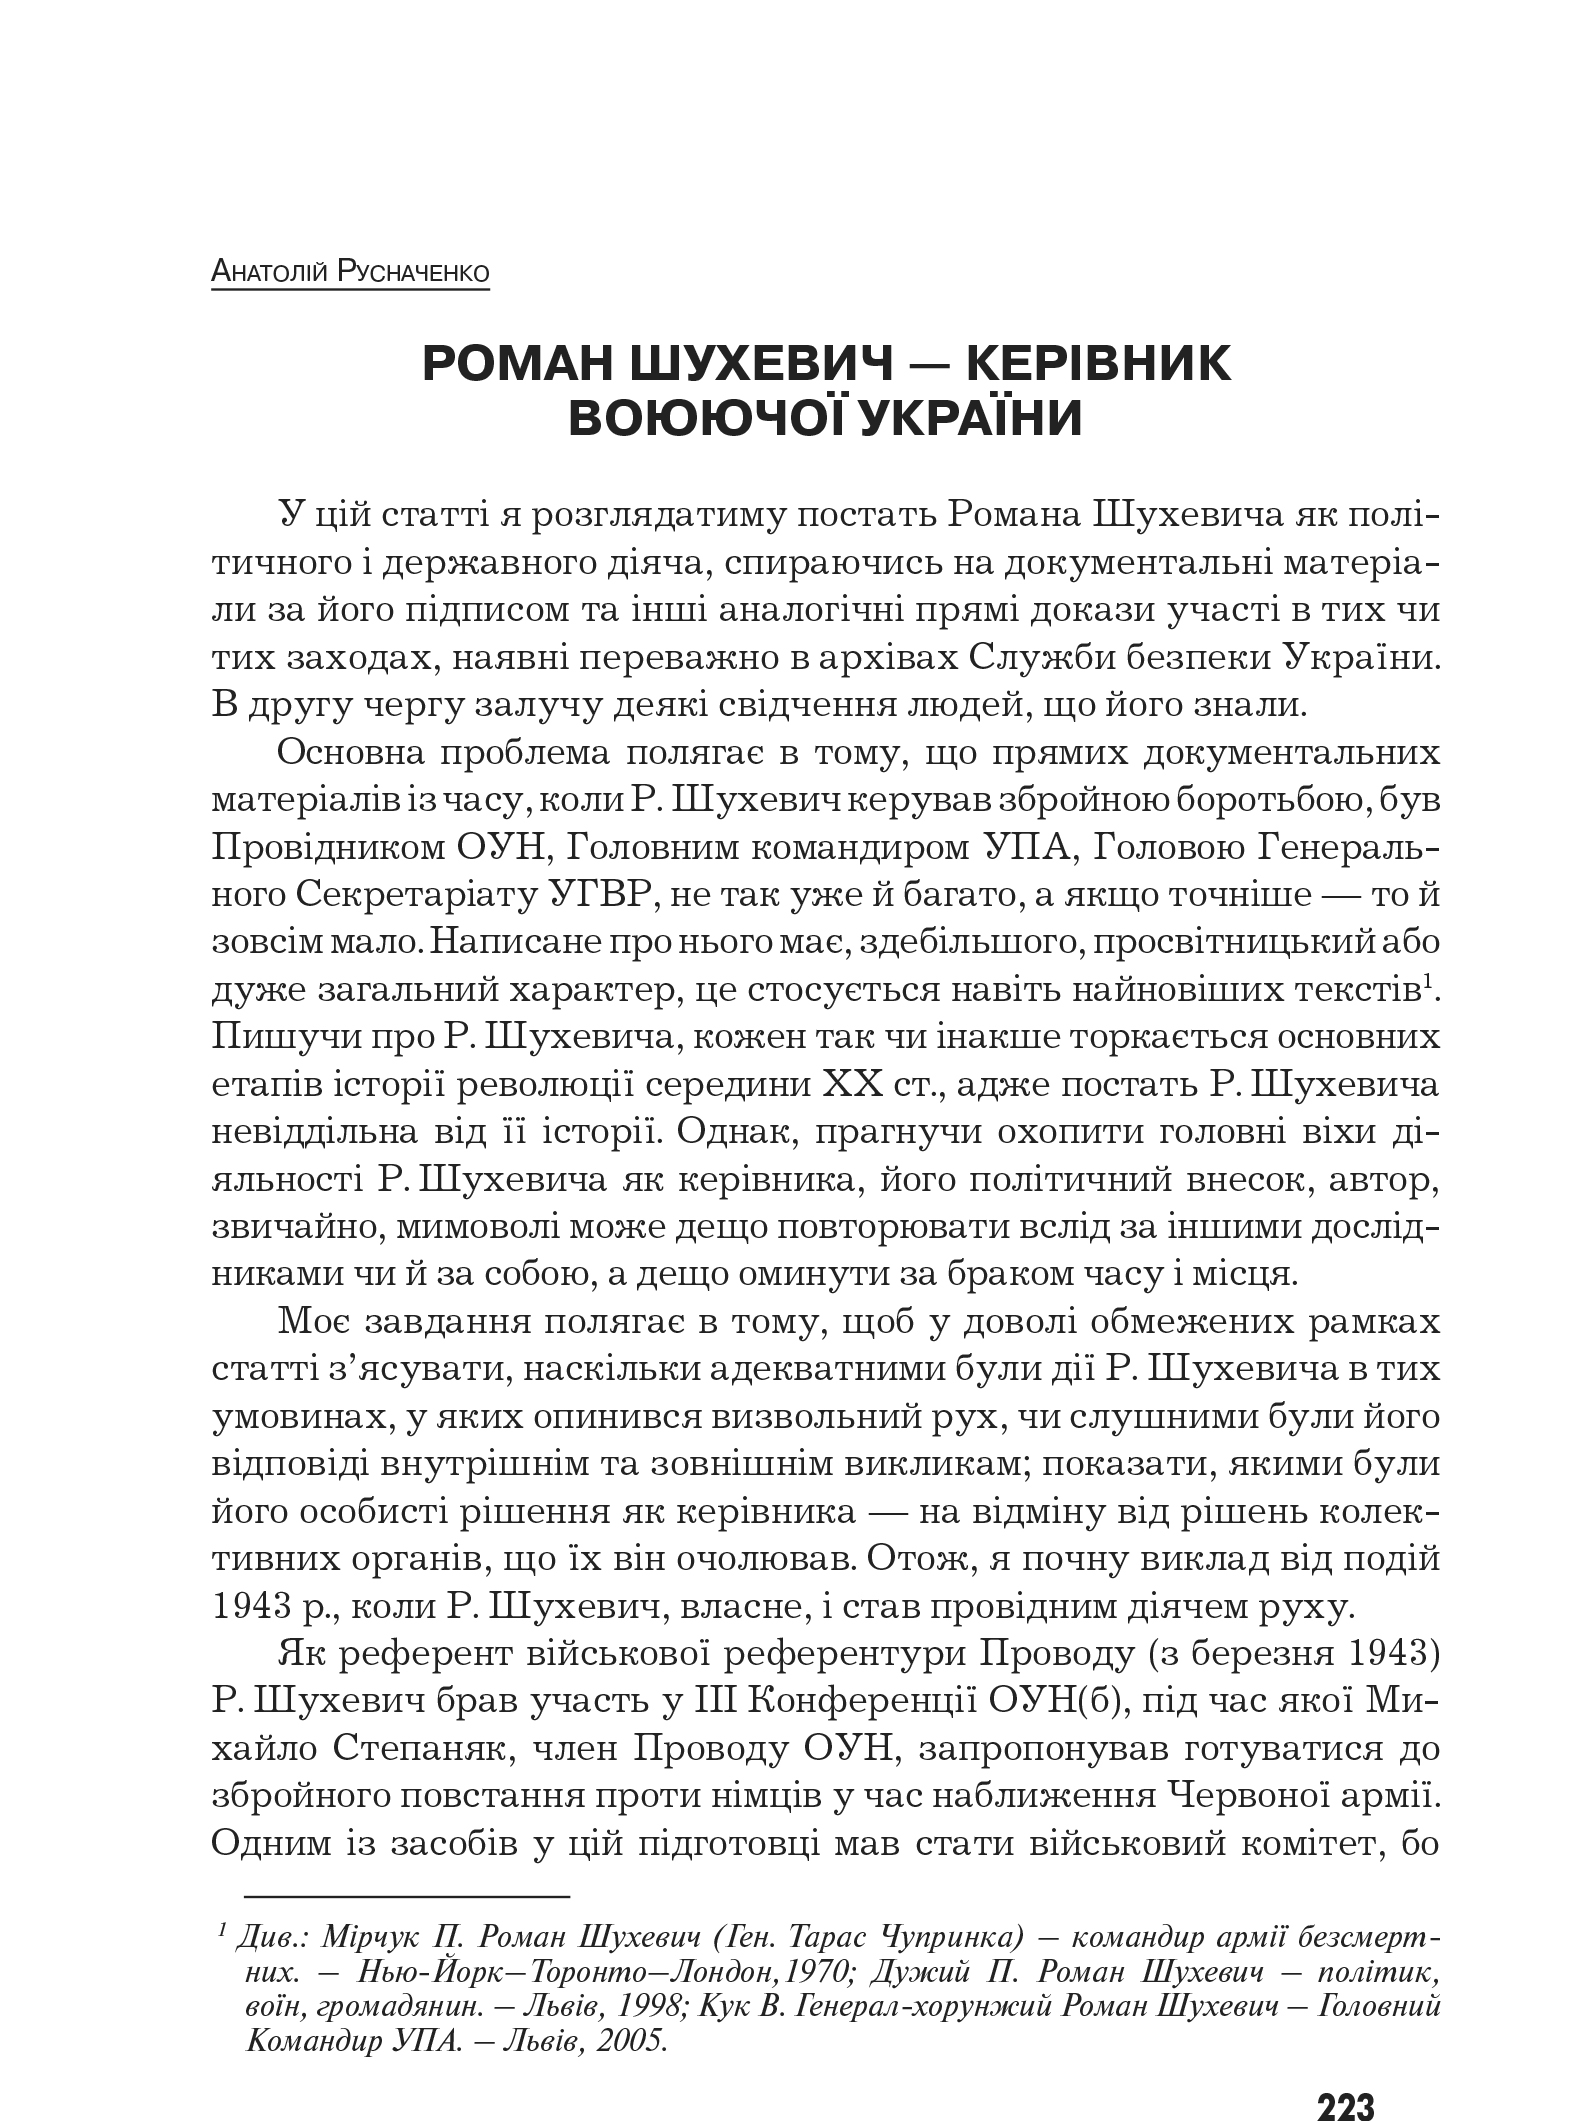 Український визвольний рух №10, ст. 233 - 243